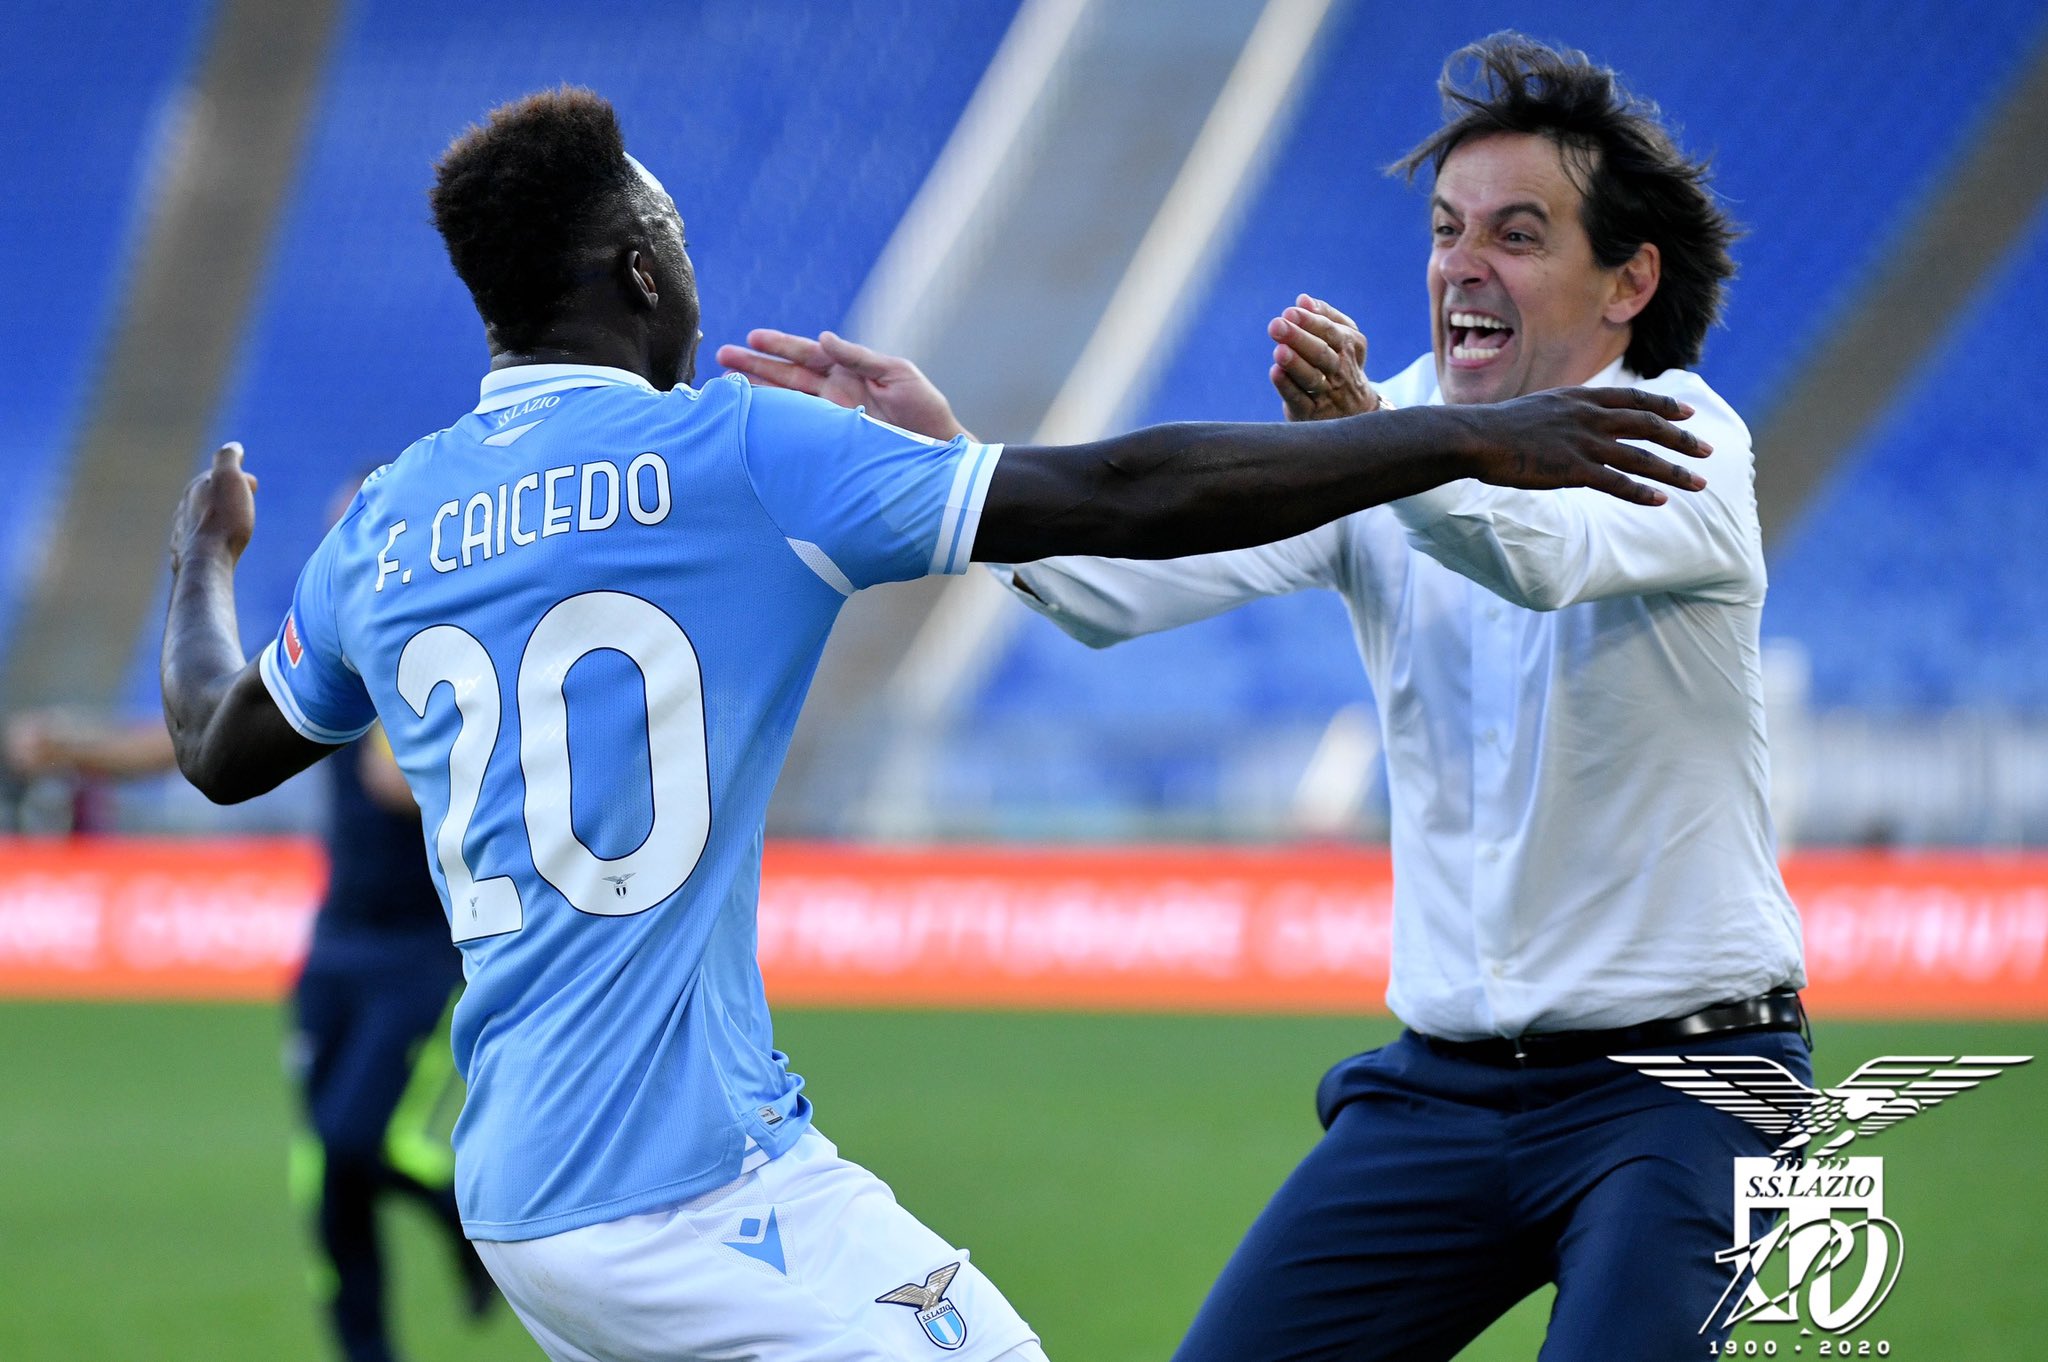 Il solito Caicedo salva la Lazio nel finale: 3-2 sul Crotone